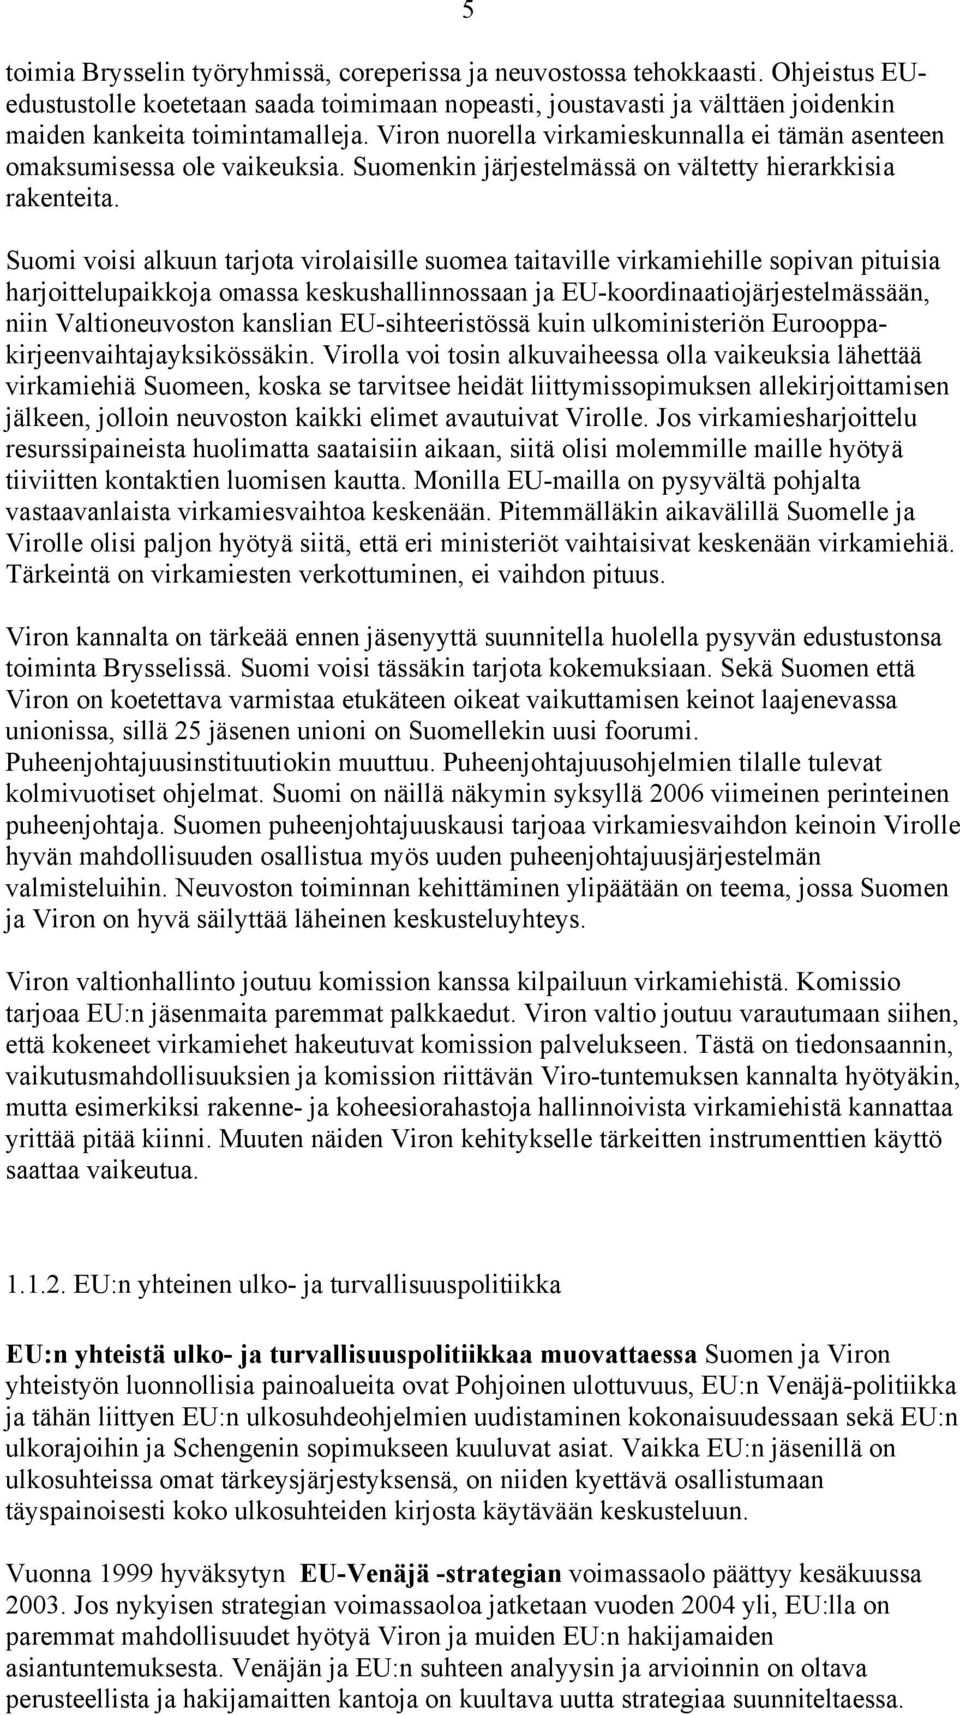 Suomi voisi alkuun tarjota virolaisille suomea taitaville virkamiehille sopivan pituisia harjoittelupaikkoja omassa keskushallinnossaan ja EU-koordinaatiojärjestelmässään, niin Valtioneuvoston